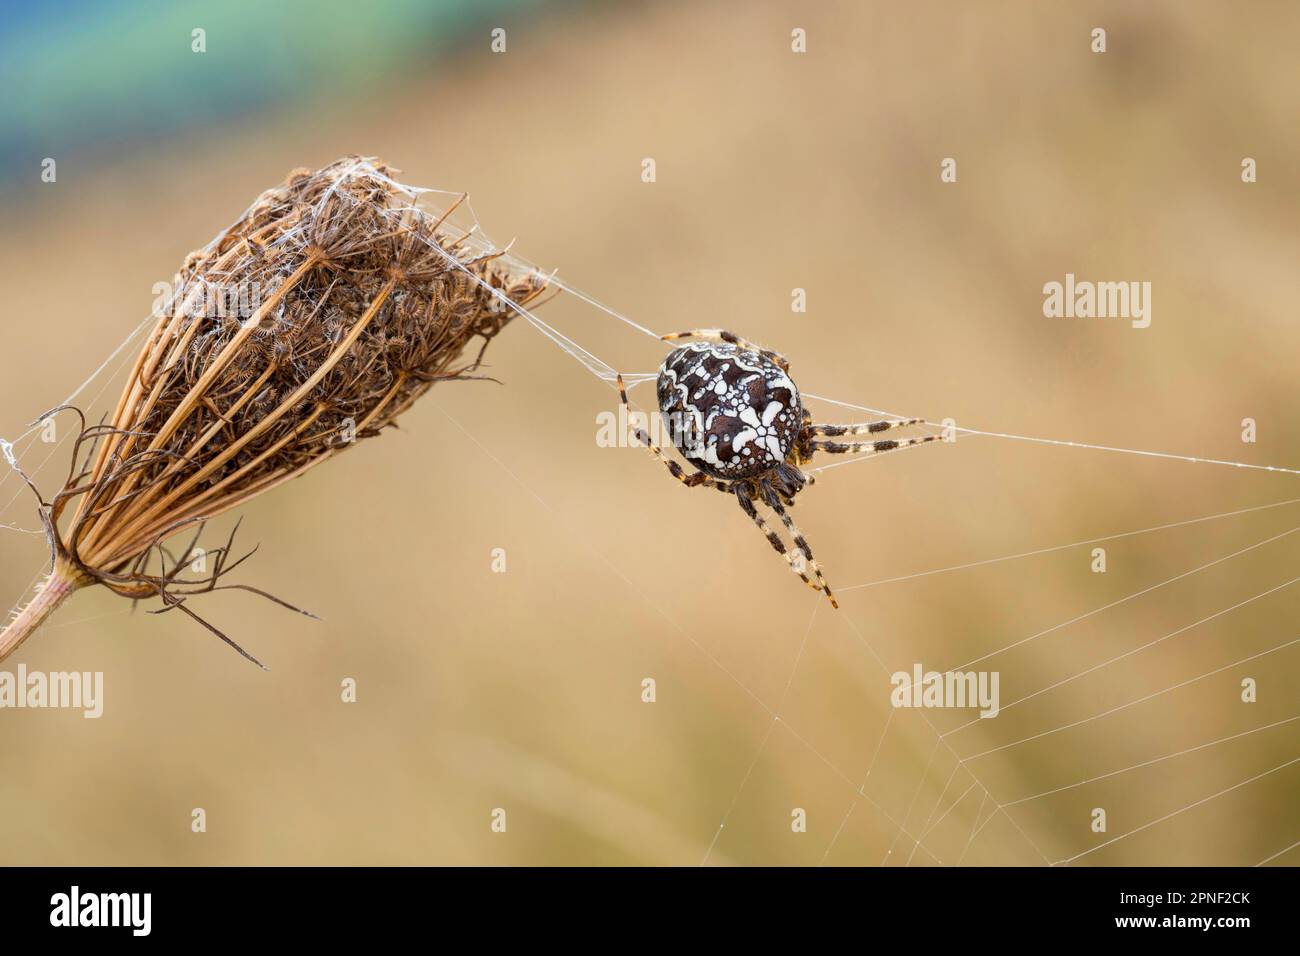 Cross orbweaver, jardin araignée, spider Araneus diadematus (croix), dans le web, Allemagne Banque D'Images